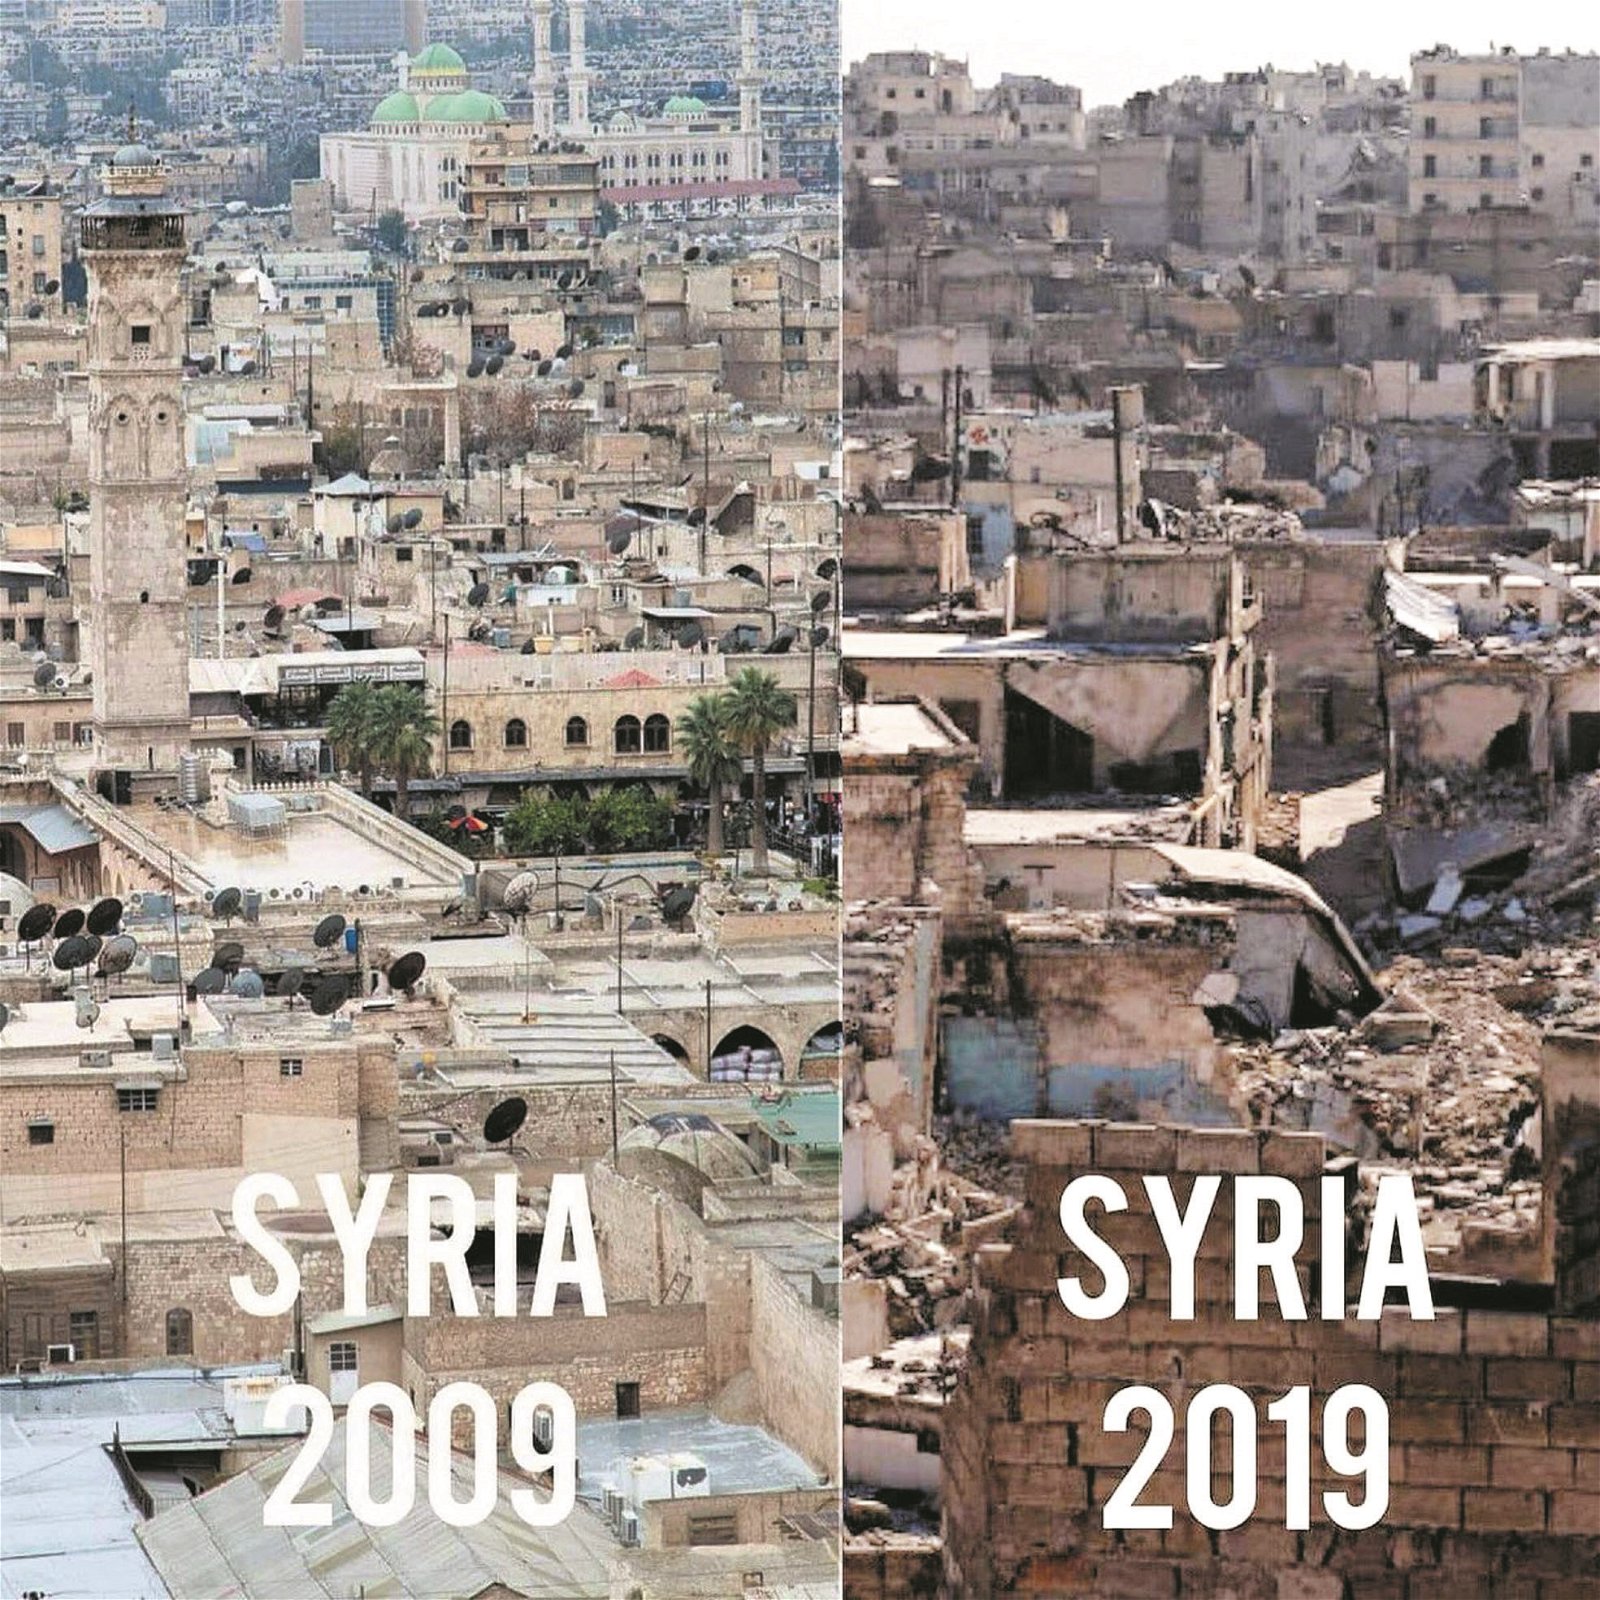 这是叙利亚一处在炮火的轰击下，10年后只留下面目全非的颓垣断壁，显现出战争的可怕。网民上传该图片借此警示世人关于战火无情，并提倡和平的普世价值。